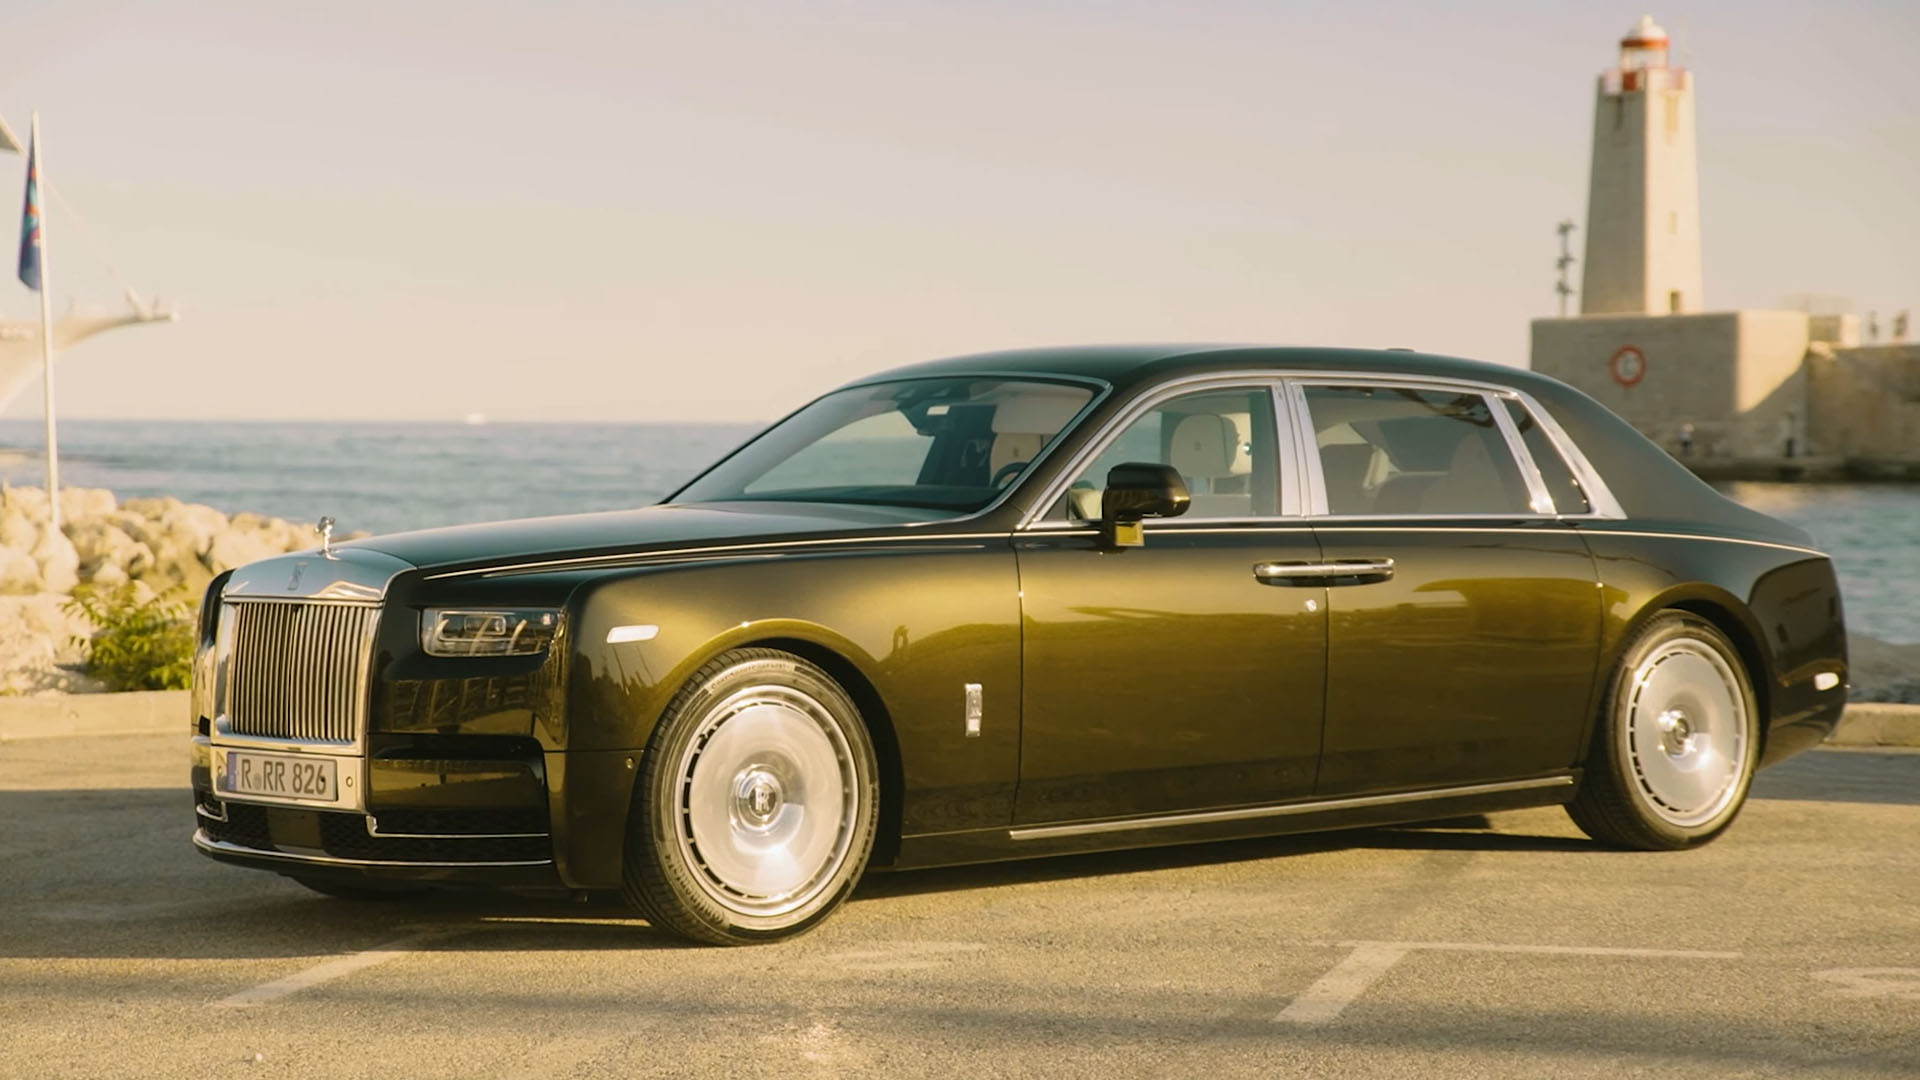 Making the best better, the new Rolls Royce Phantom